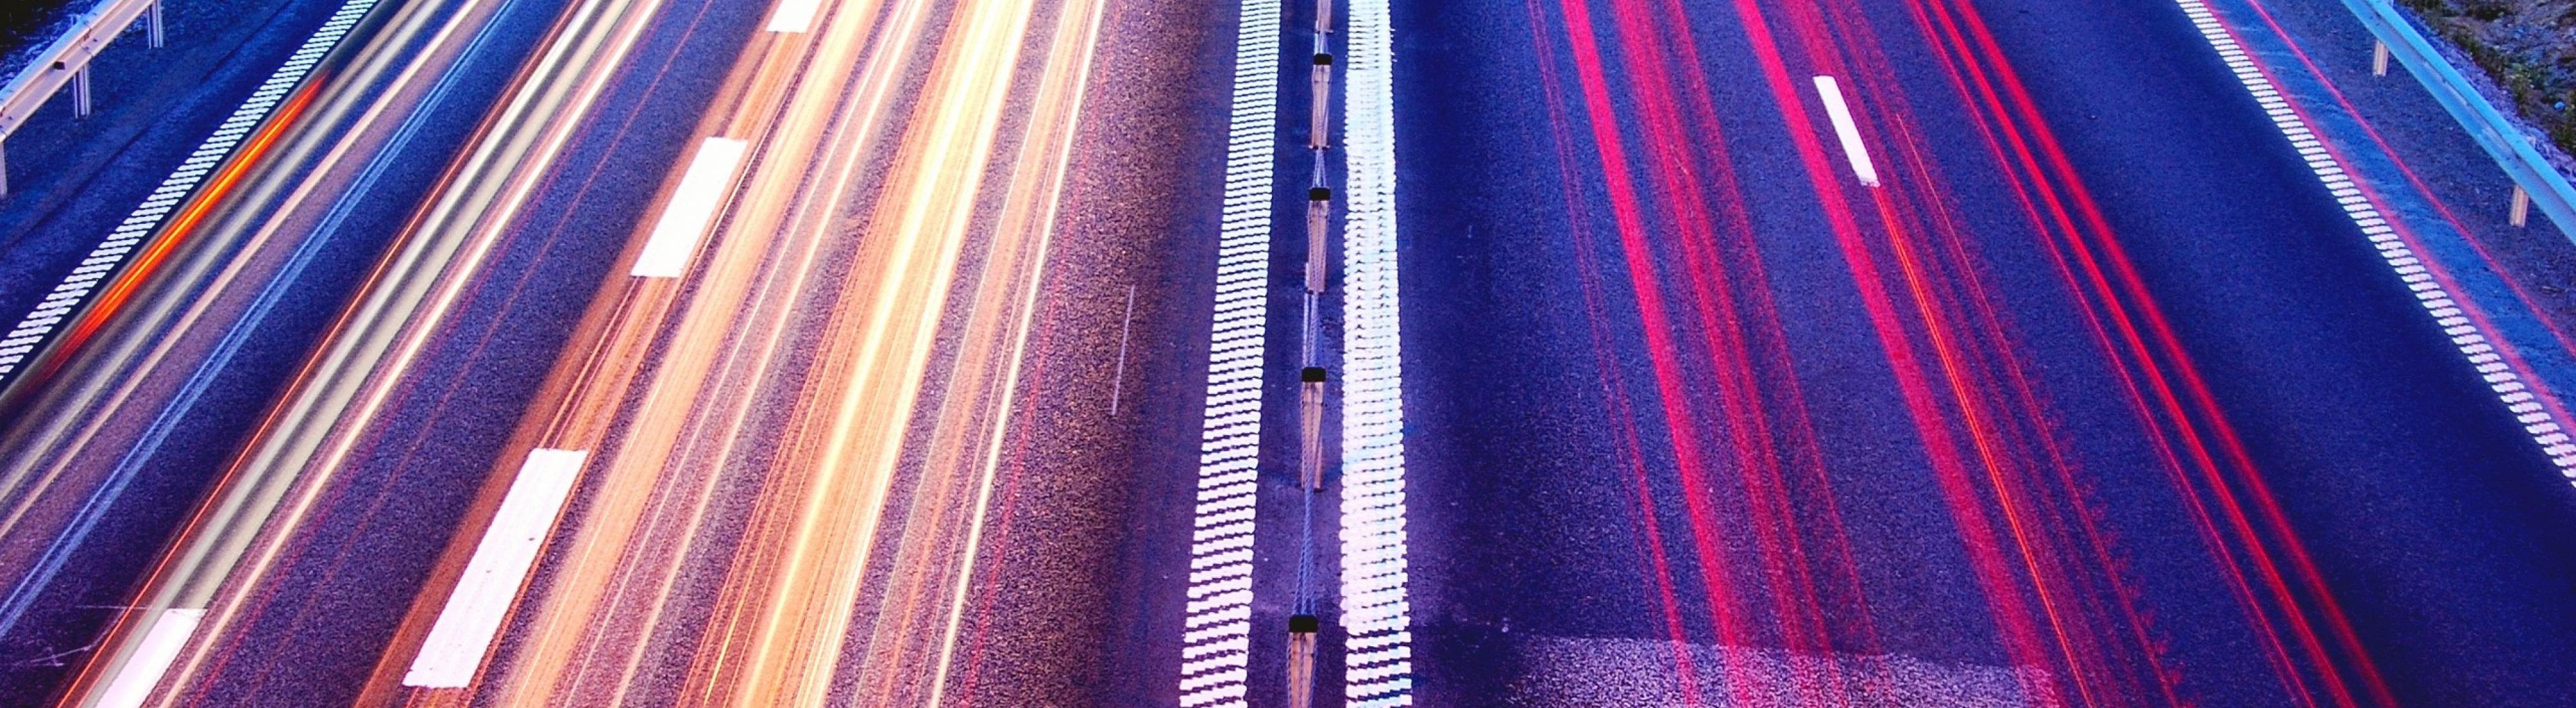 Lange belichtete Fahrbahnen der Autobahn, sodass Lichtlinien in Gelb und Rot entstehen.